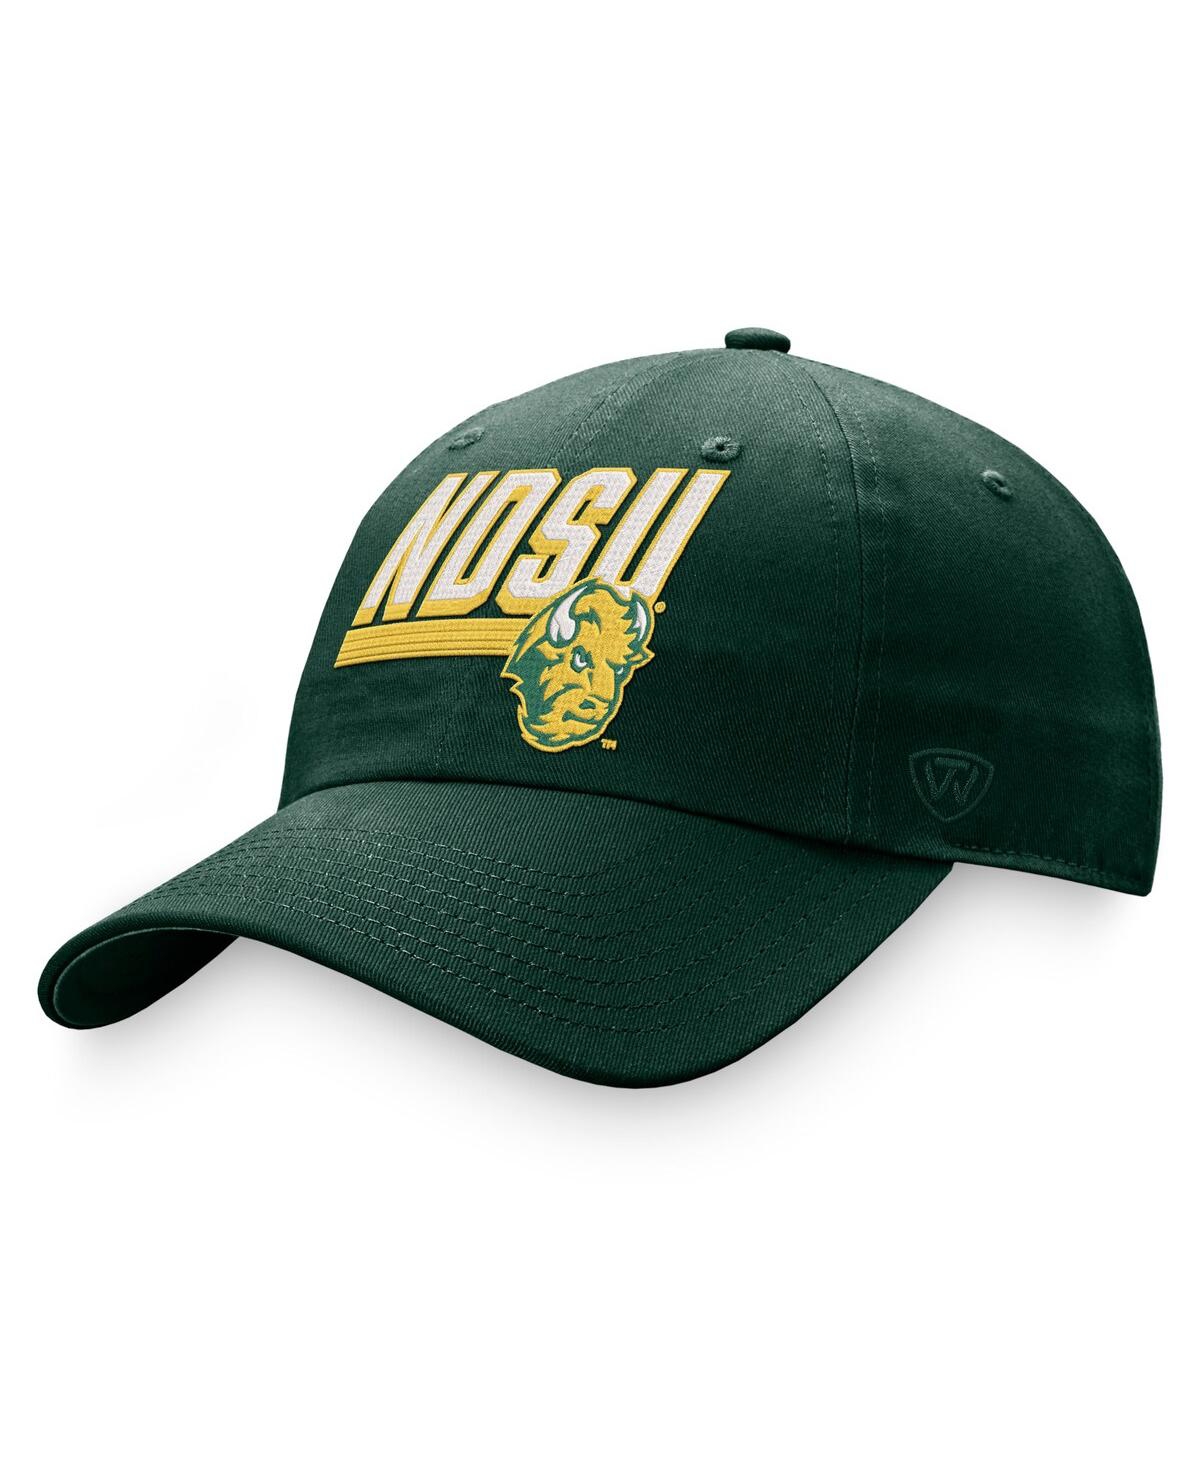 Shop Top Of The World Men's  Green Ndsu Bison Slice Adjustable Hat